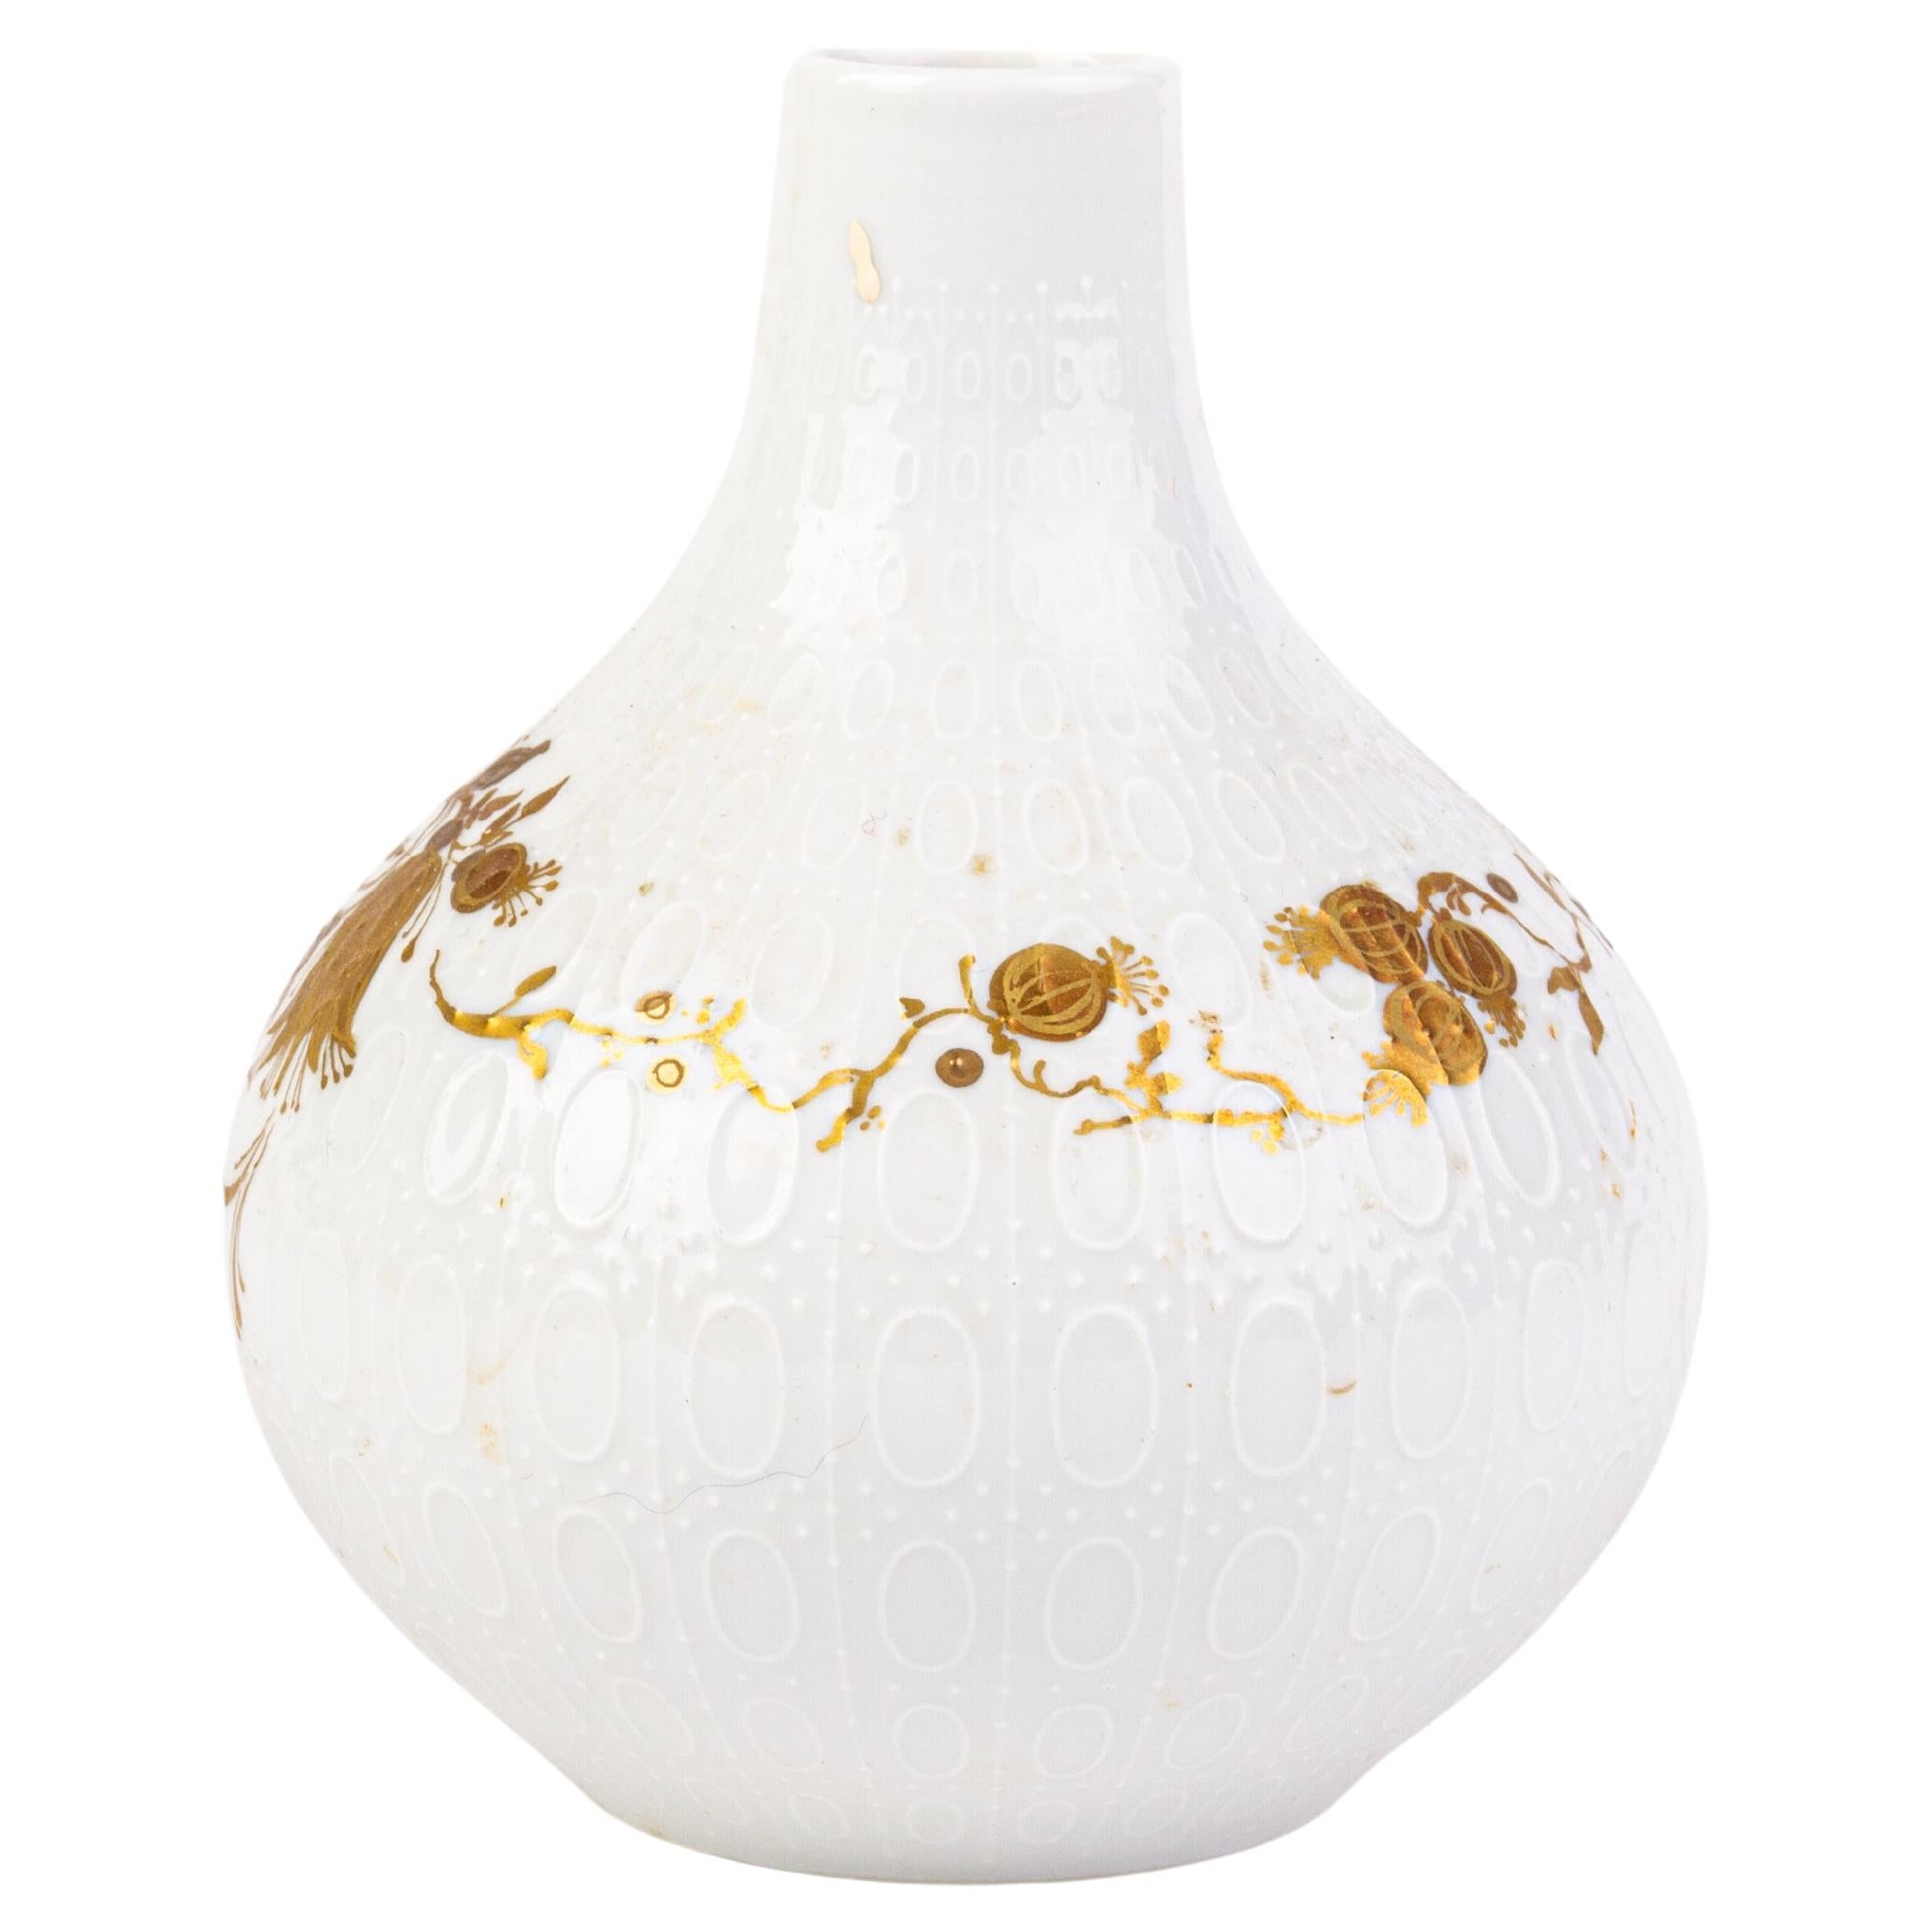 Bjorn Wiinblad Signed Rosenthal German Porcelain Vase